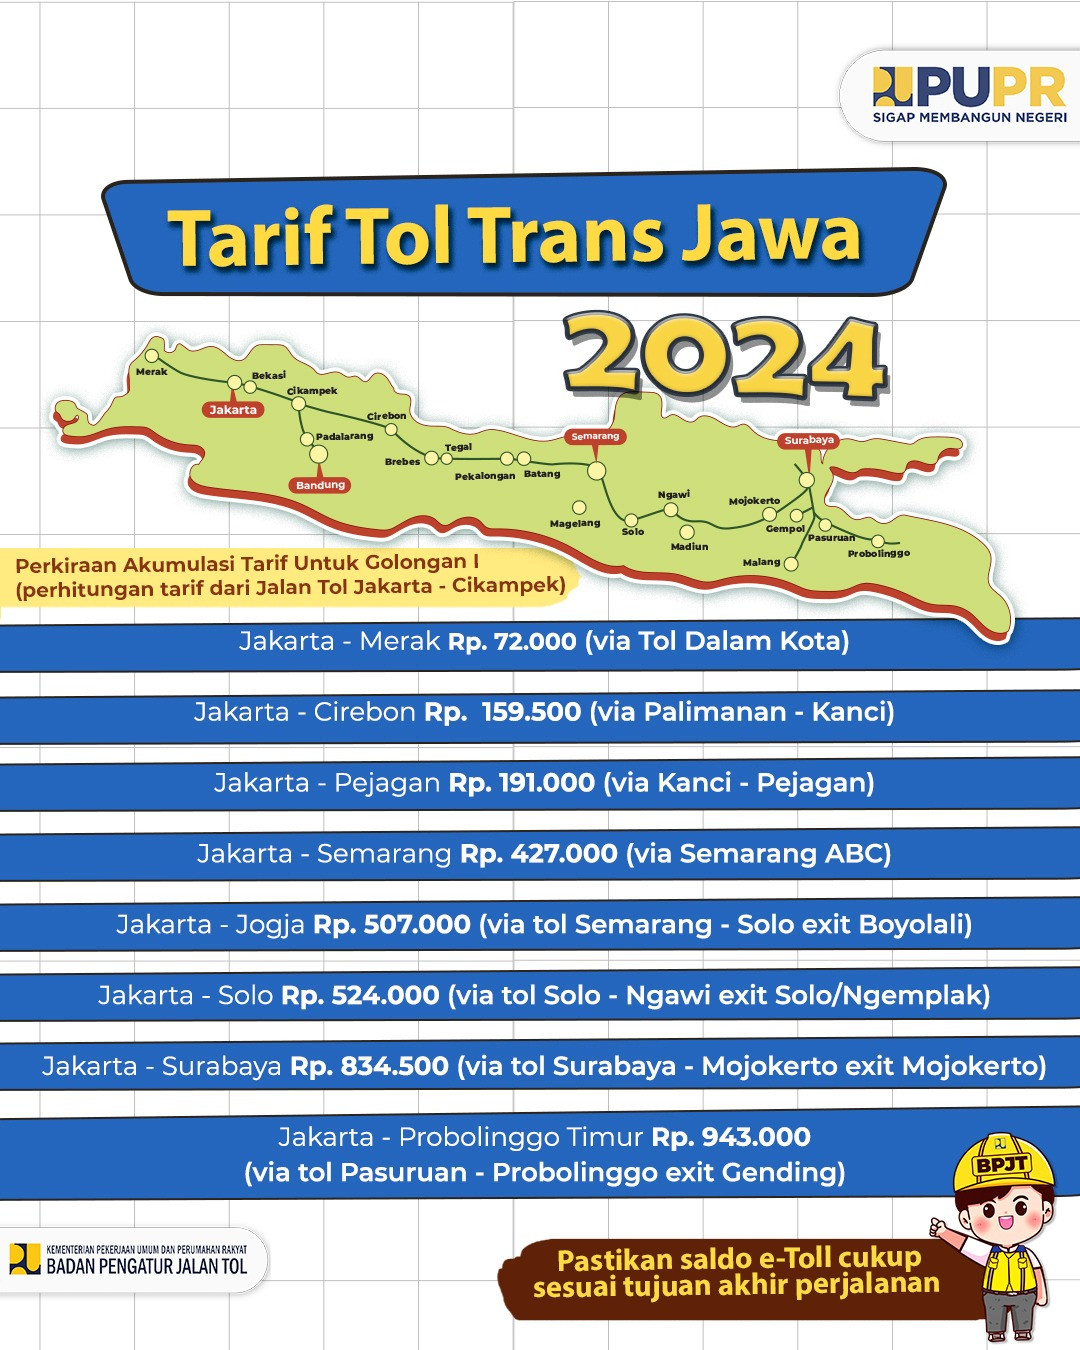 Perkiraan Akumulasi Tarif Jalan Tol Trans Jawa 2024